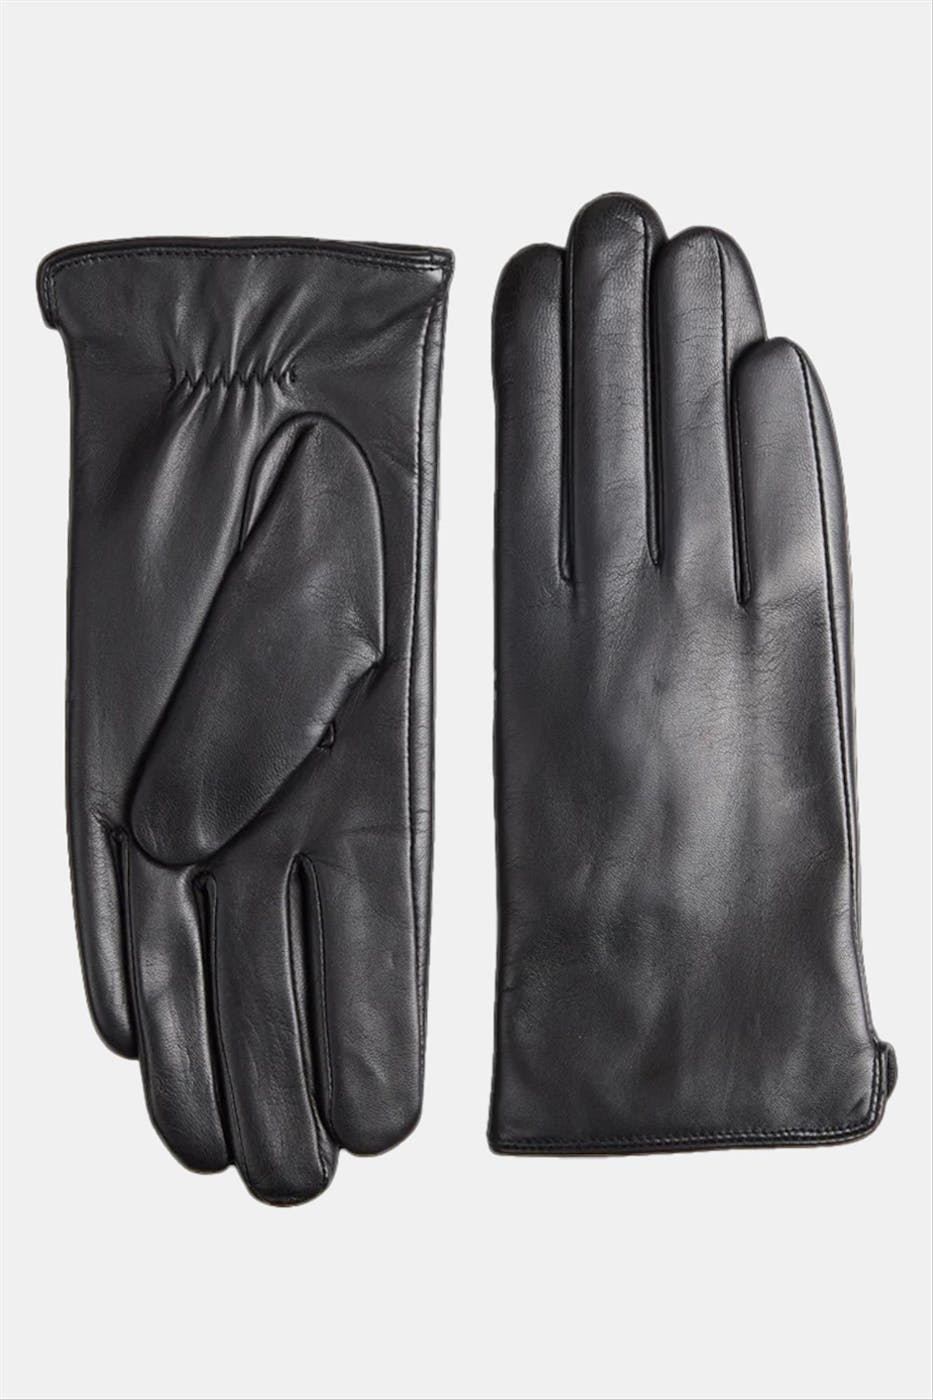 Markberg - Zwarte Vilma handschoenen